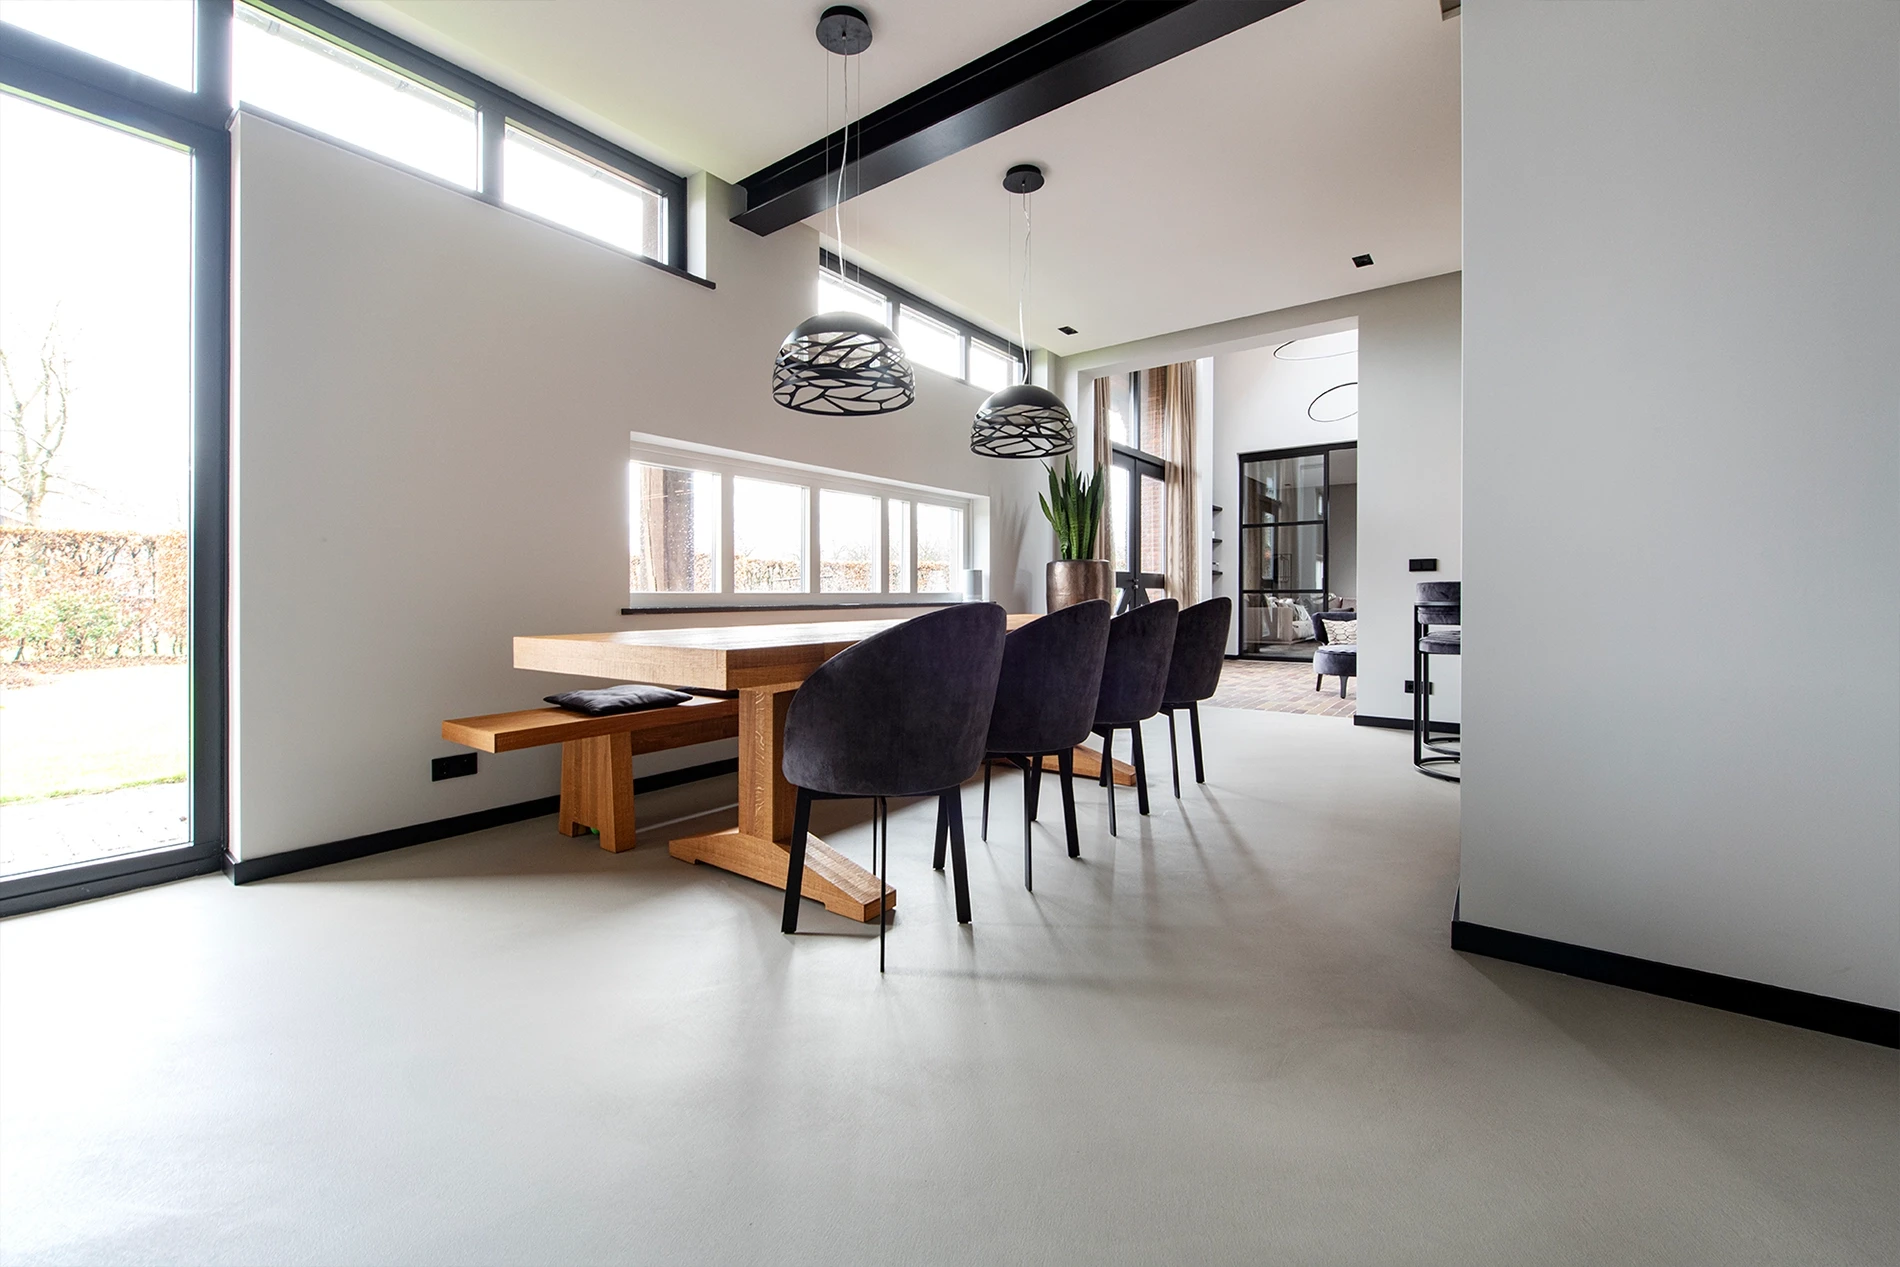 Premium Leef-Beton vloer (kleur: Fossil) in gerenoveerde woonboerderij in Sint-Oedenrode4